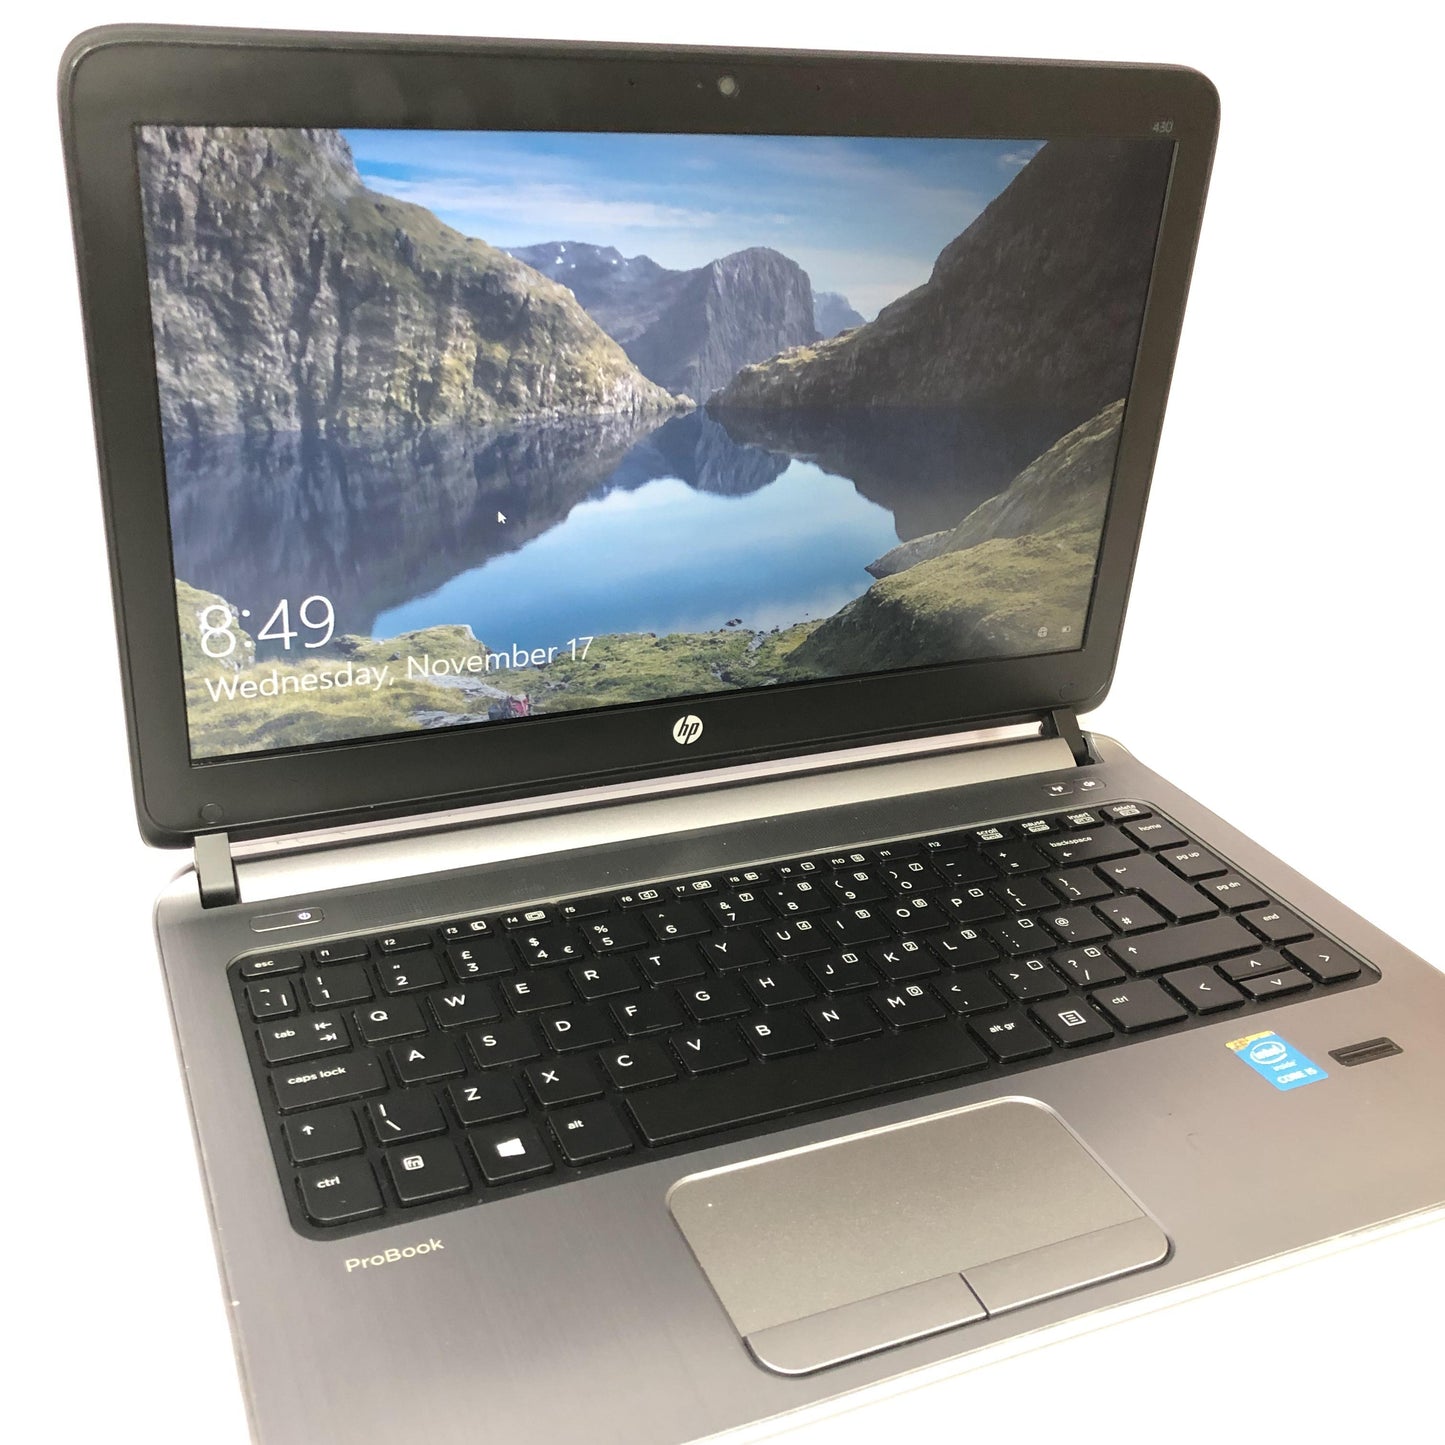 HP Probook 430 G1 Laptop, 13.3 inches, Intel Core i5-5200U CPU, 4GB RAM, 500GB HDD